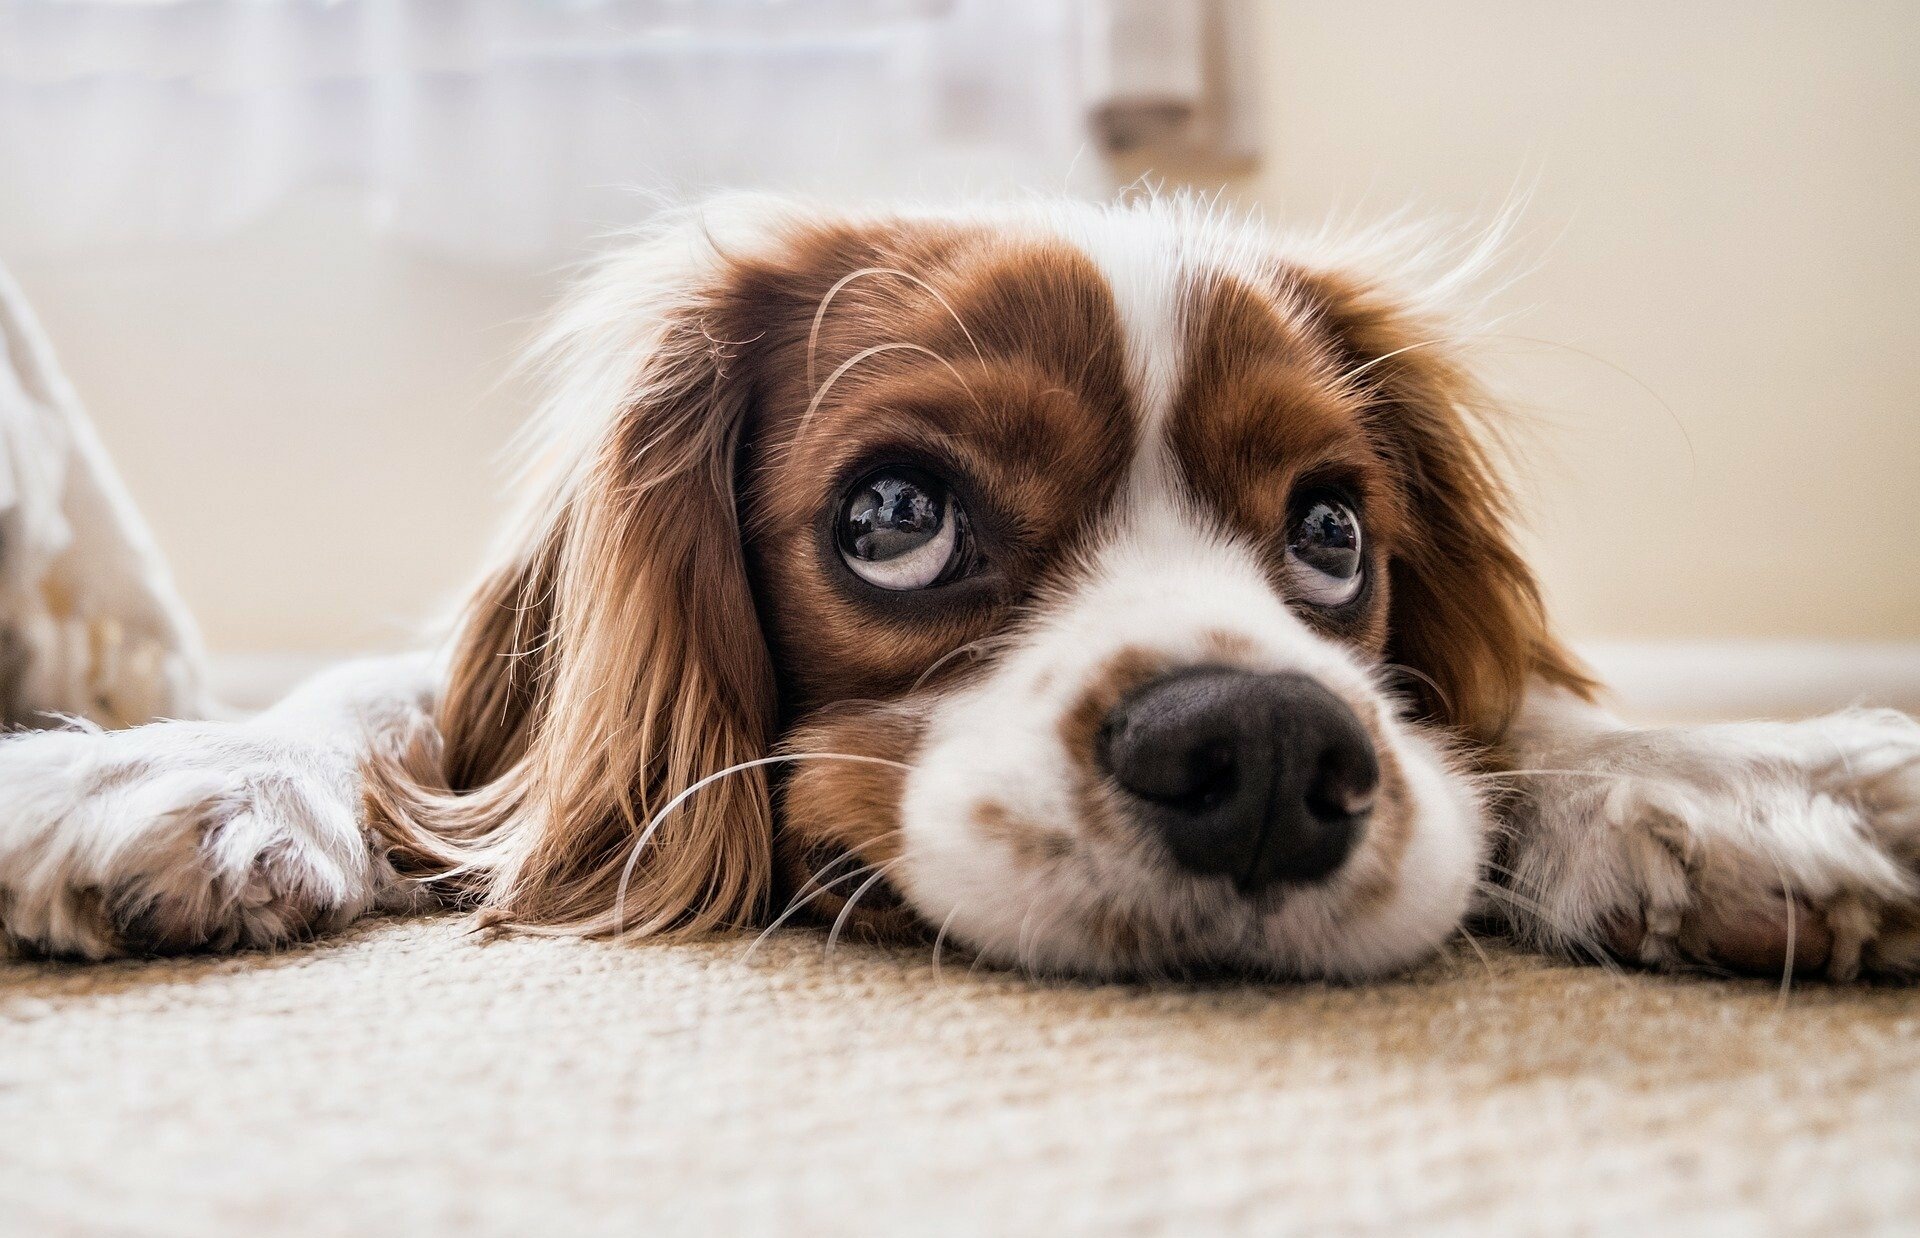 Hundehaftpflichtversicherung
ab 32,05€ im Jahr